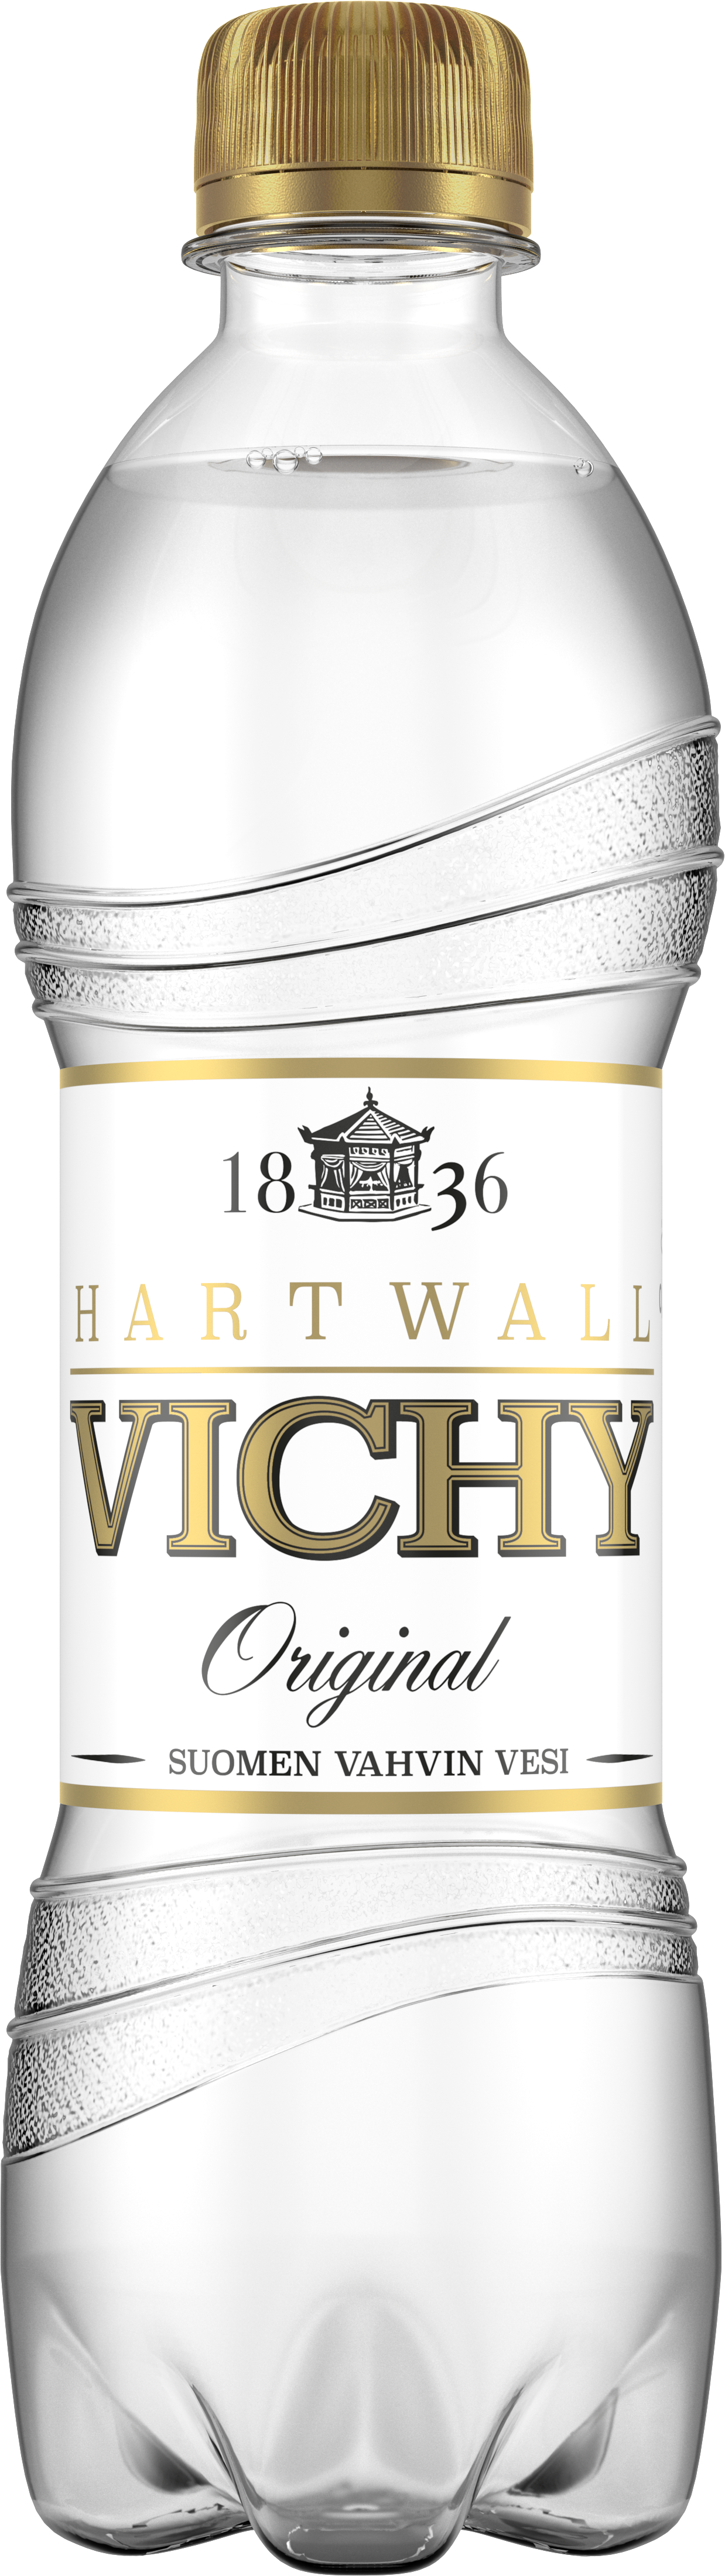 Vichy Original